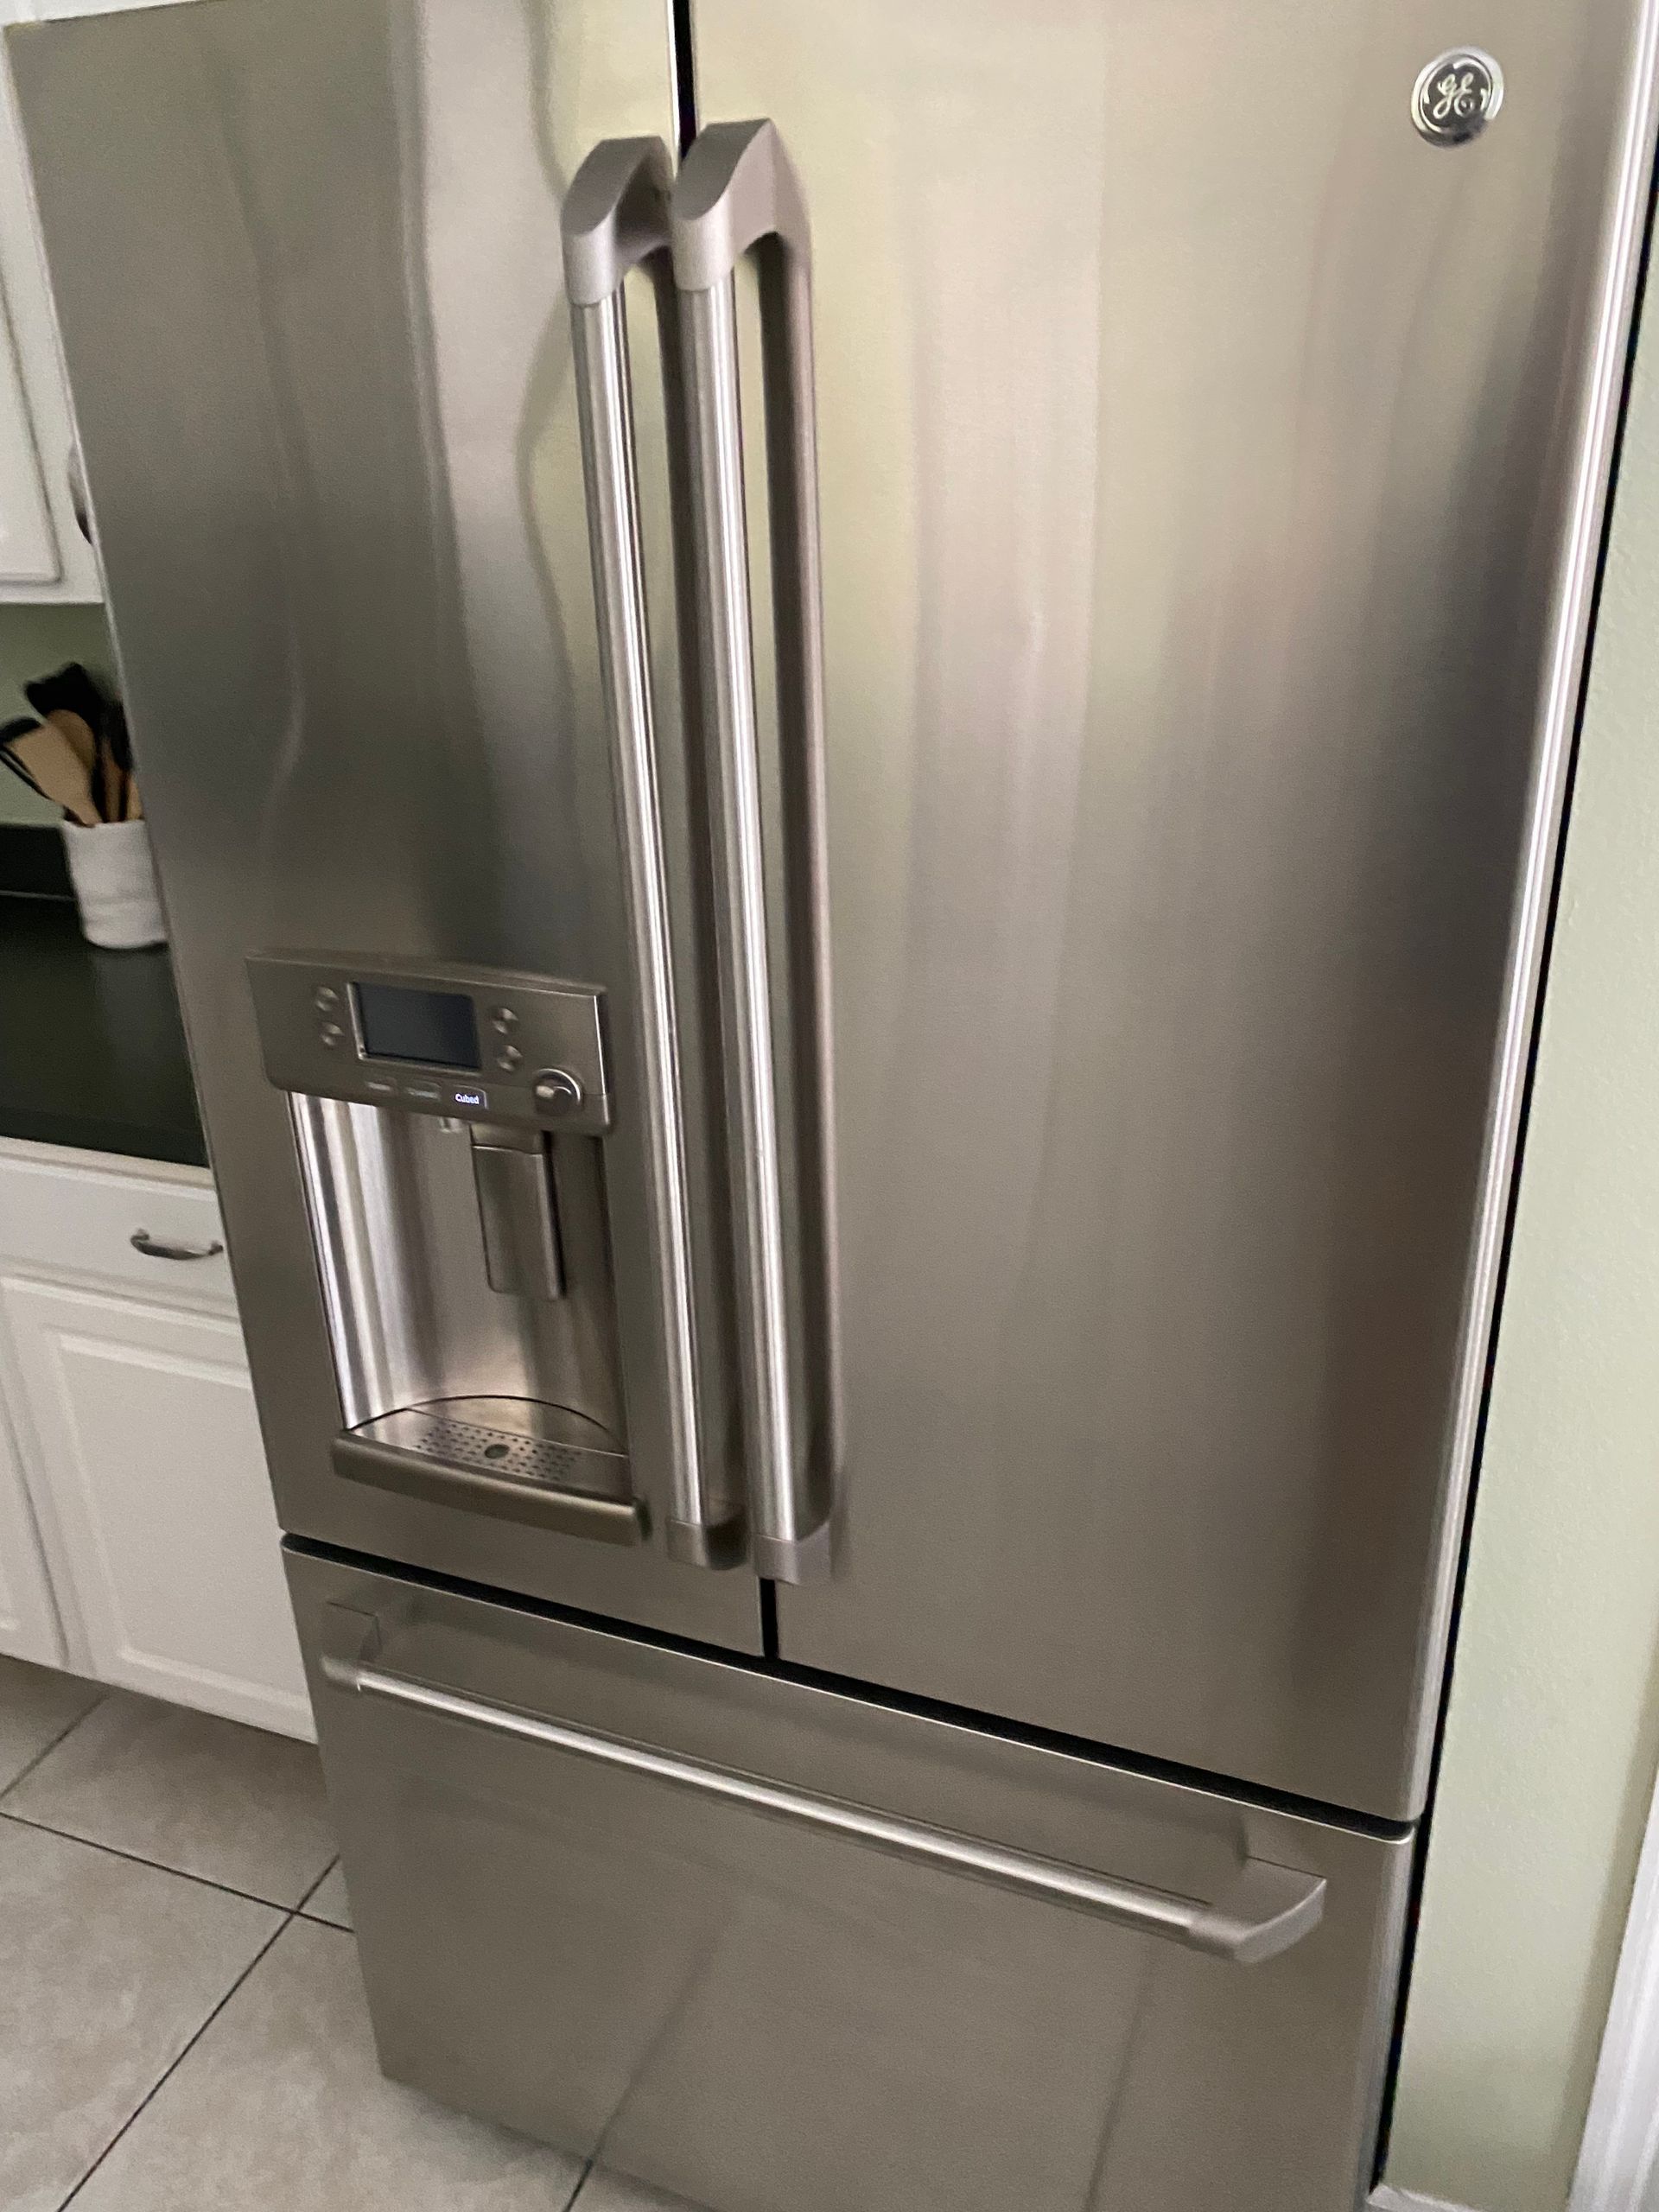 GE refrigerator repair Level Appliance Repair